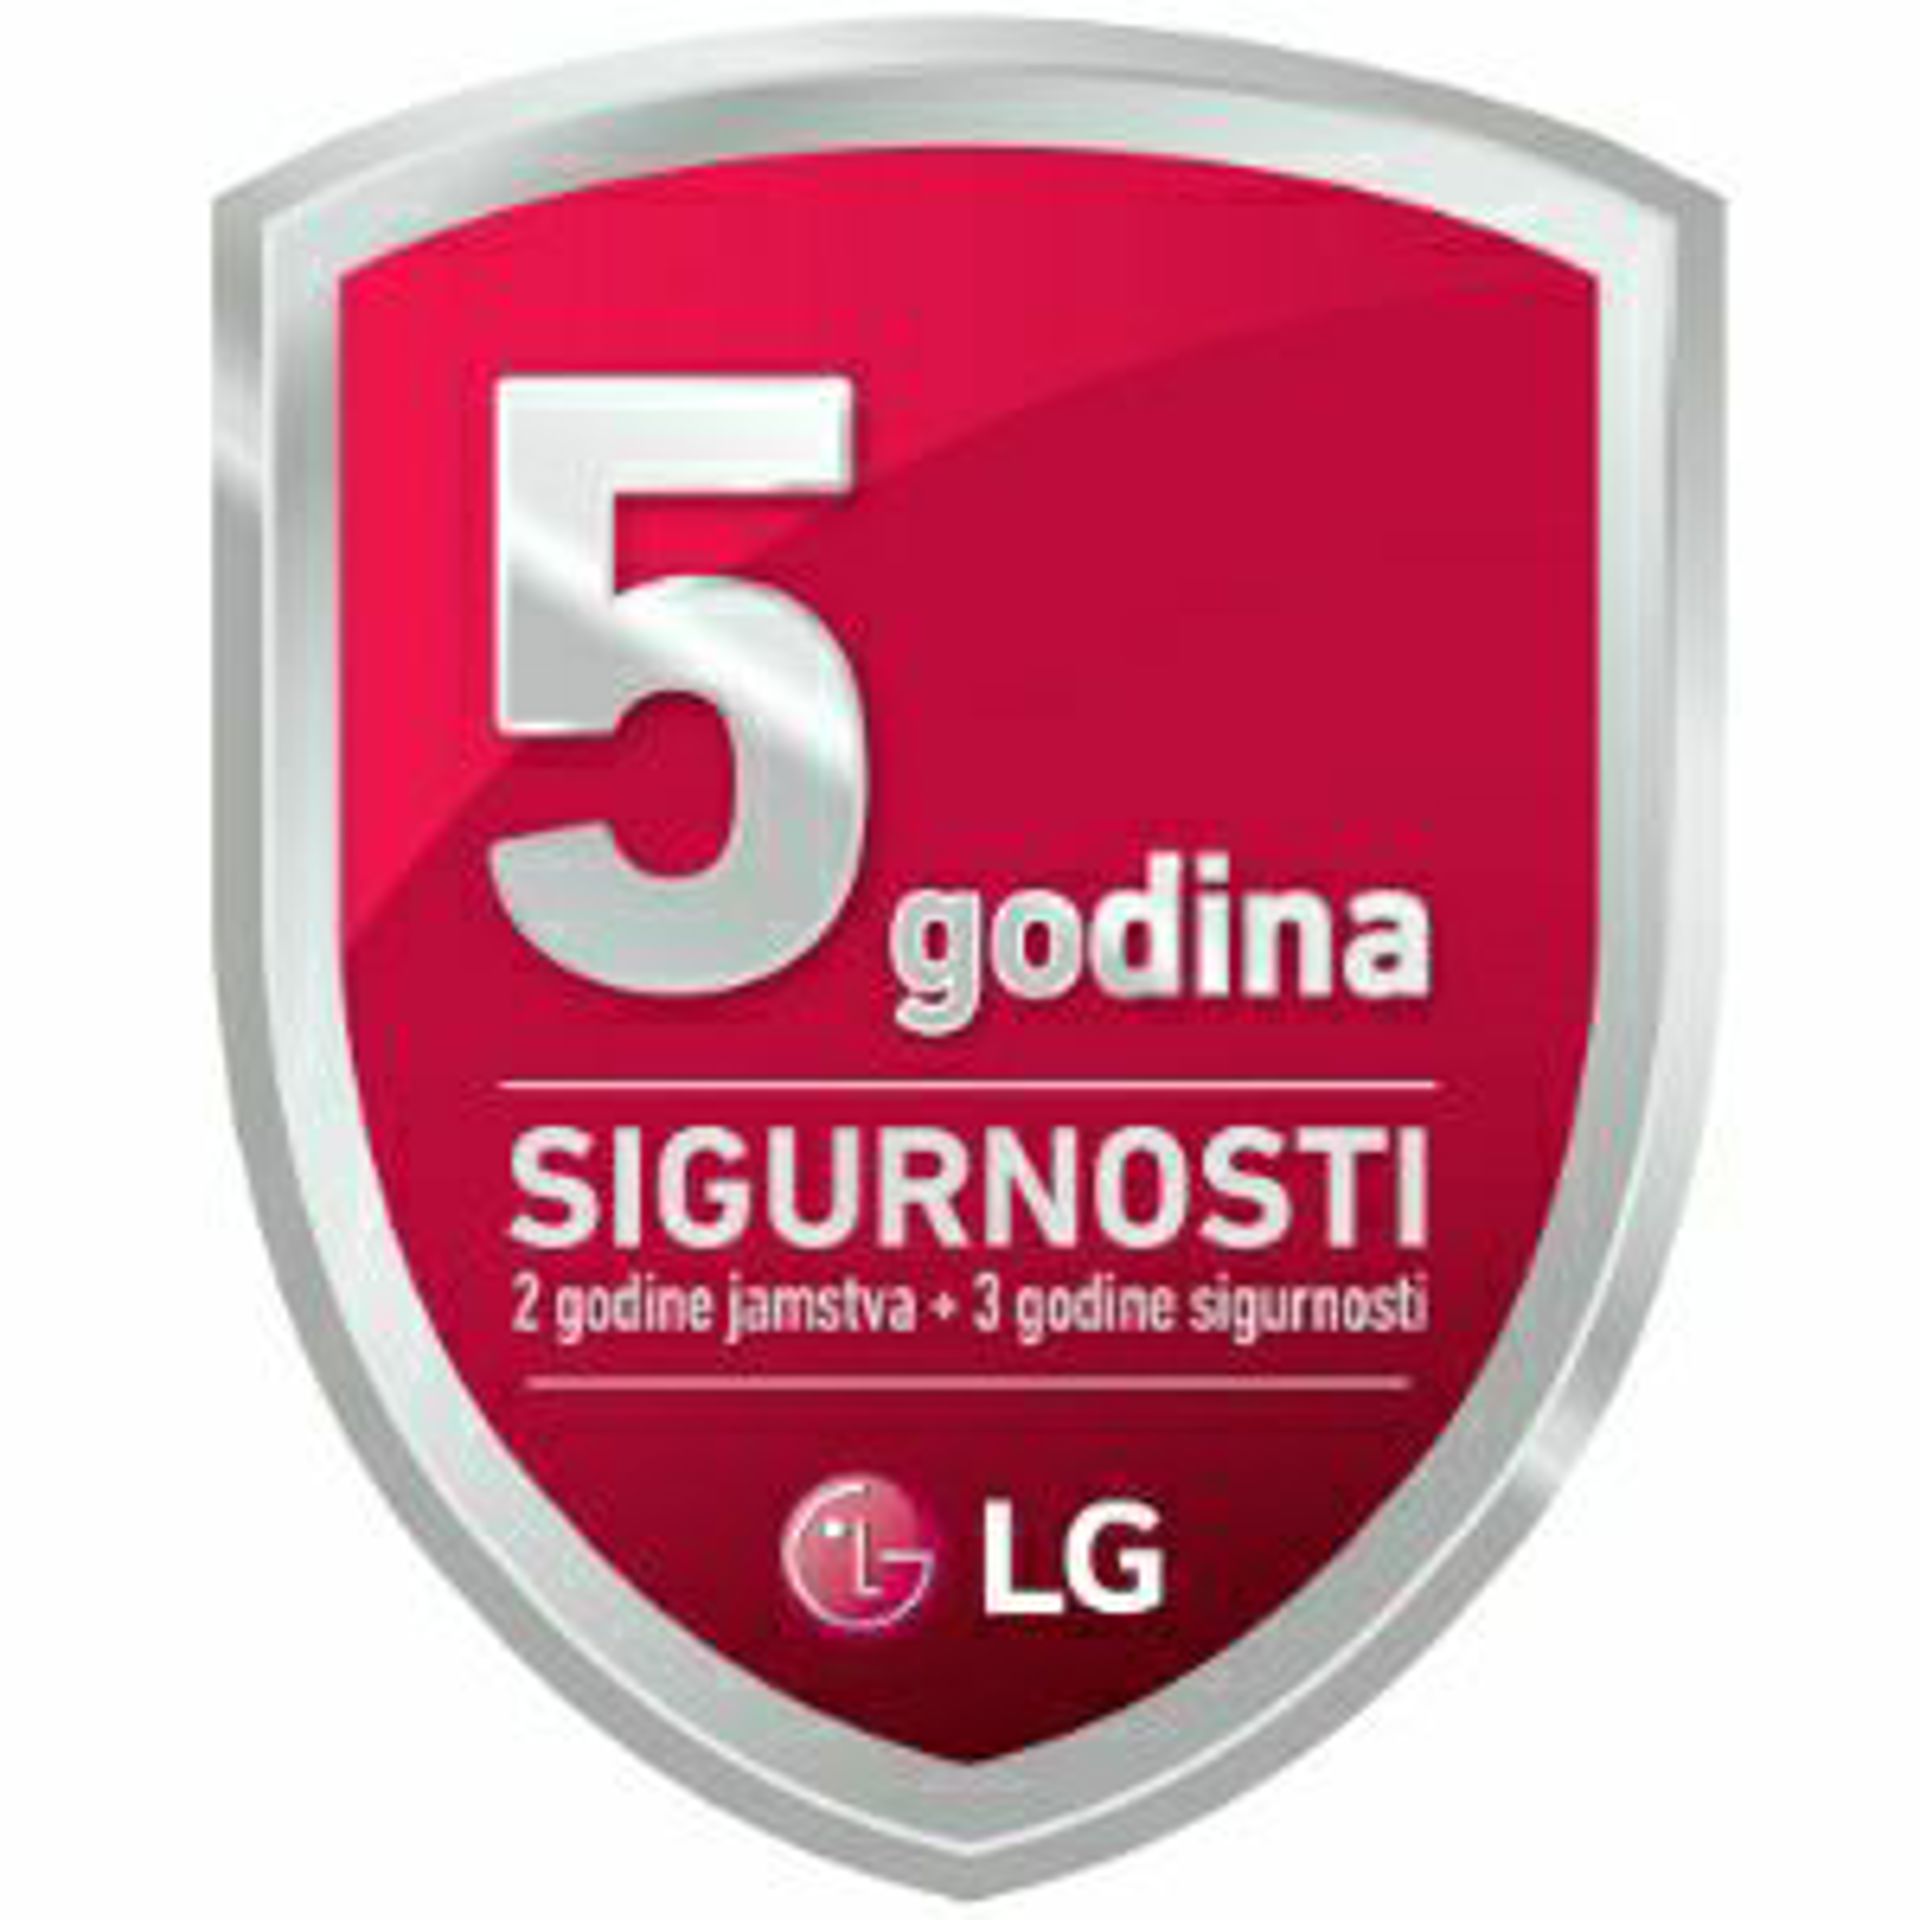 LG promocija - 5 godina sigurnosti